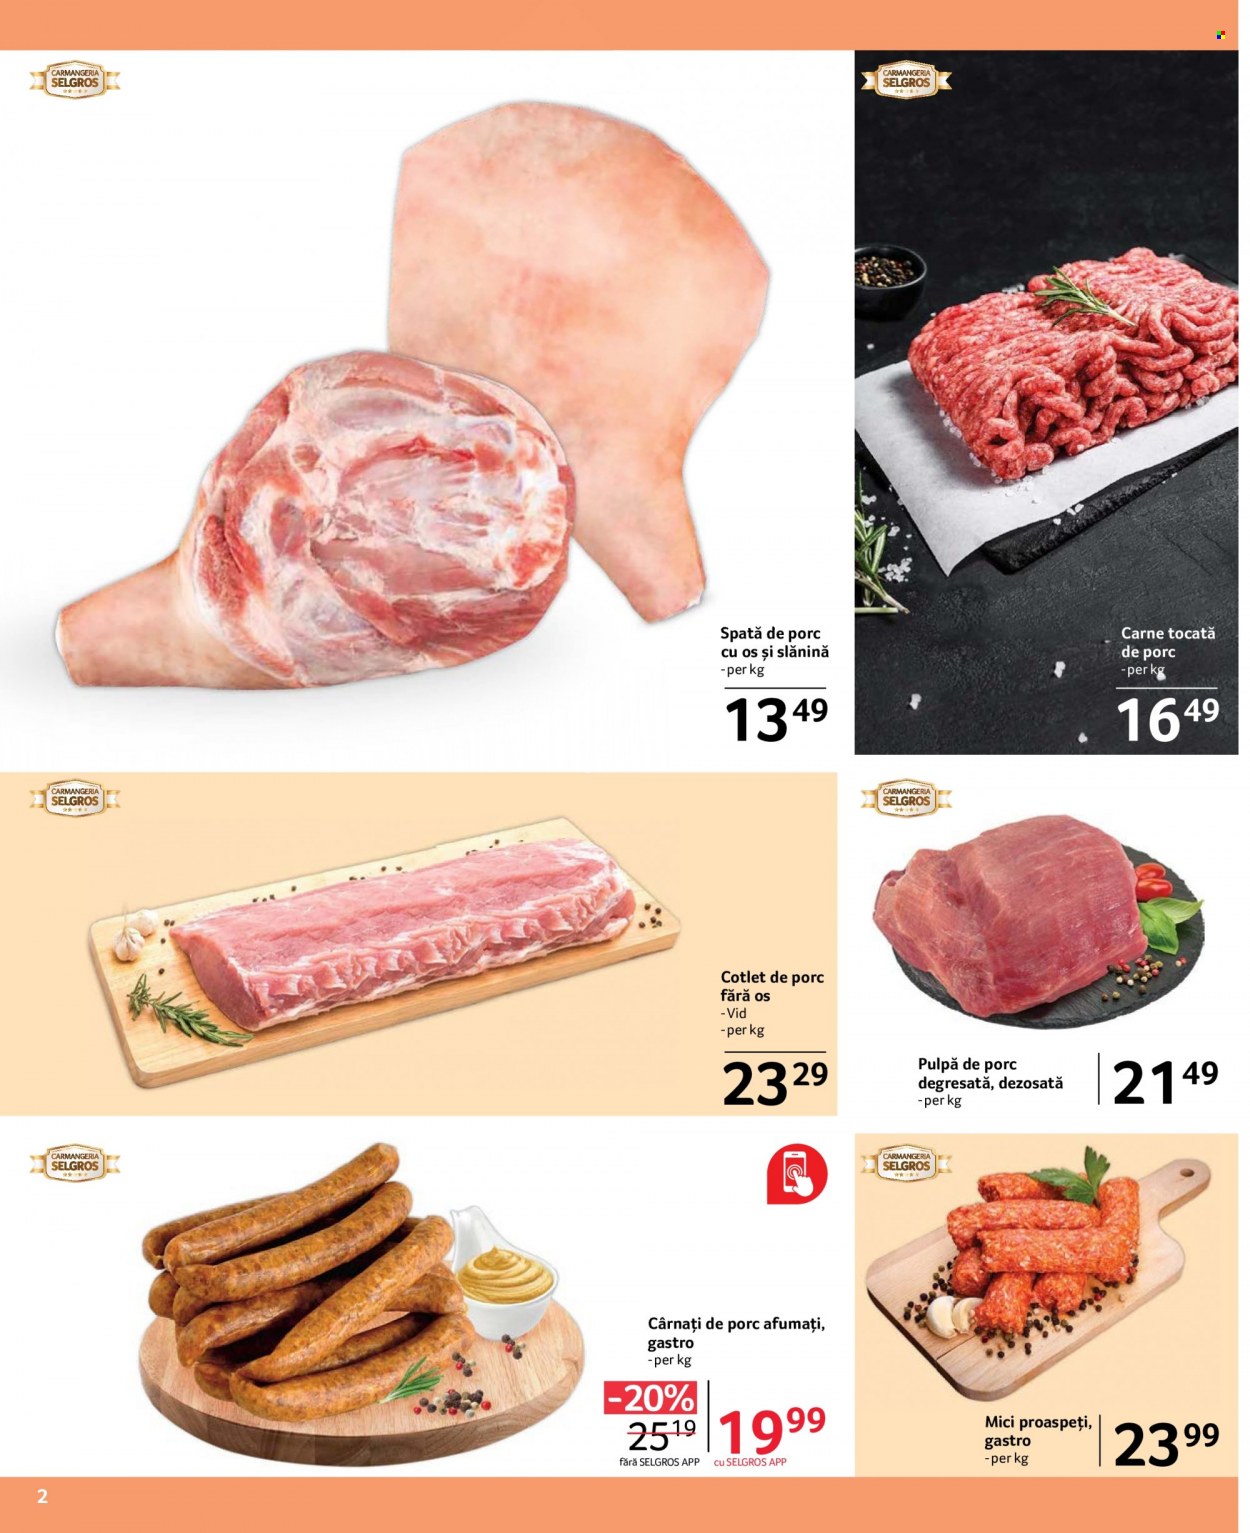 thumbnail - Cataloage Selgros - 01.12.2022 - 31.12.2022 - Produse în vânzare - cârnați de porc, carne tocată de porc, carne tocată, cotlet de porc, pulpă de porc, spată de porc, slănină afumată, cârnaţi. Pagina 2.